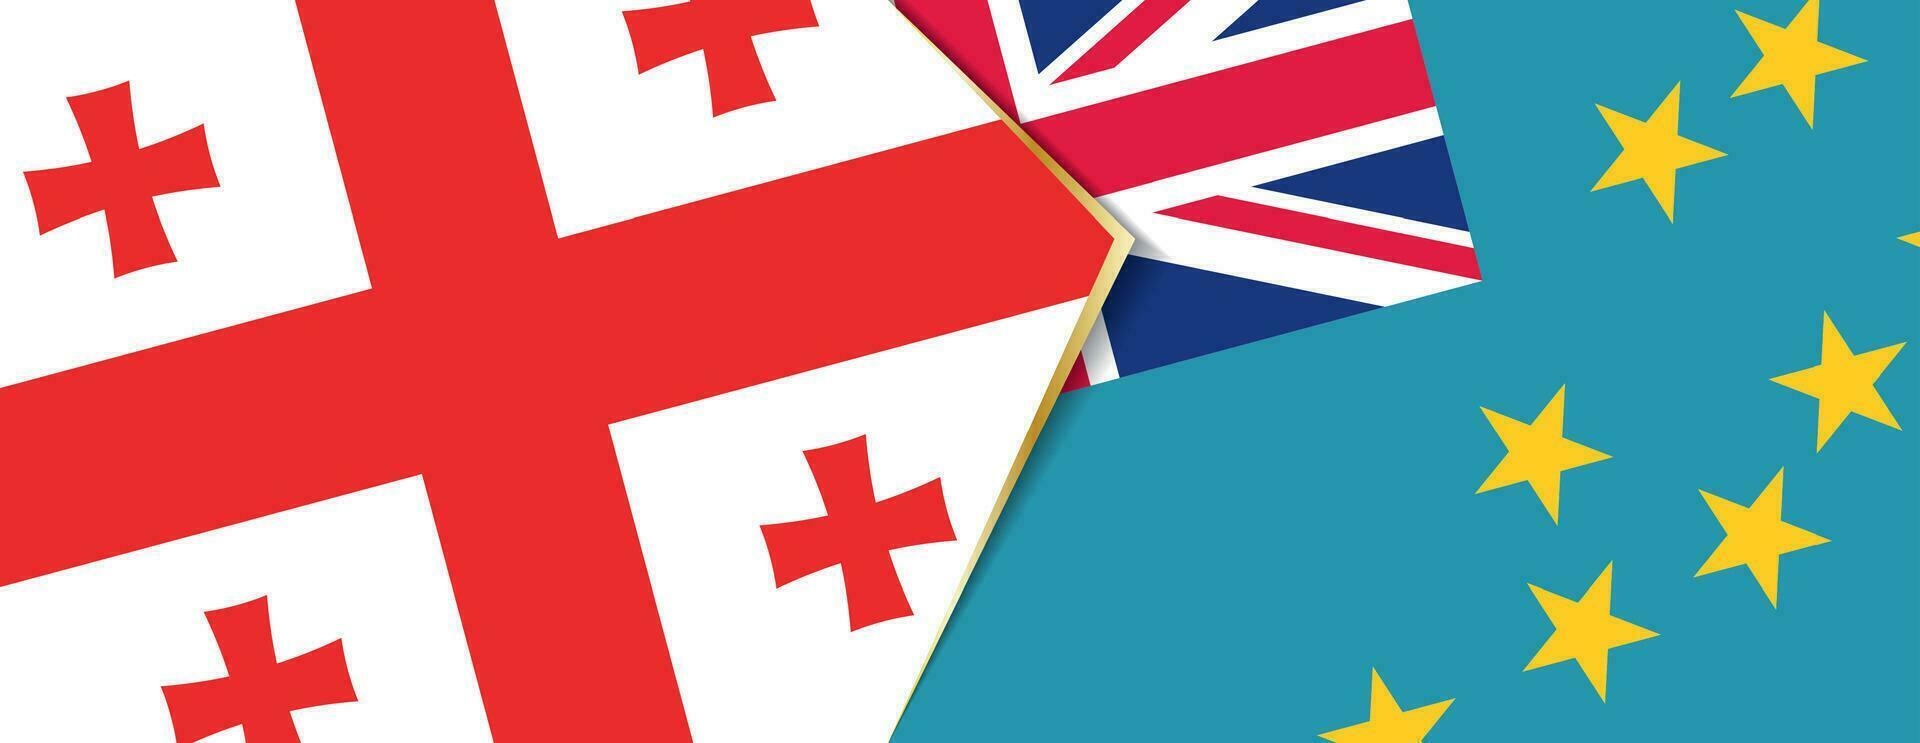 Georgia und Tuvalu Flaggen, zwei Vektor Flaggen.